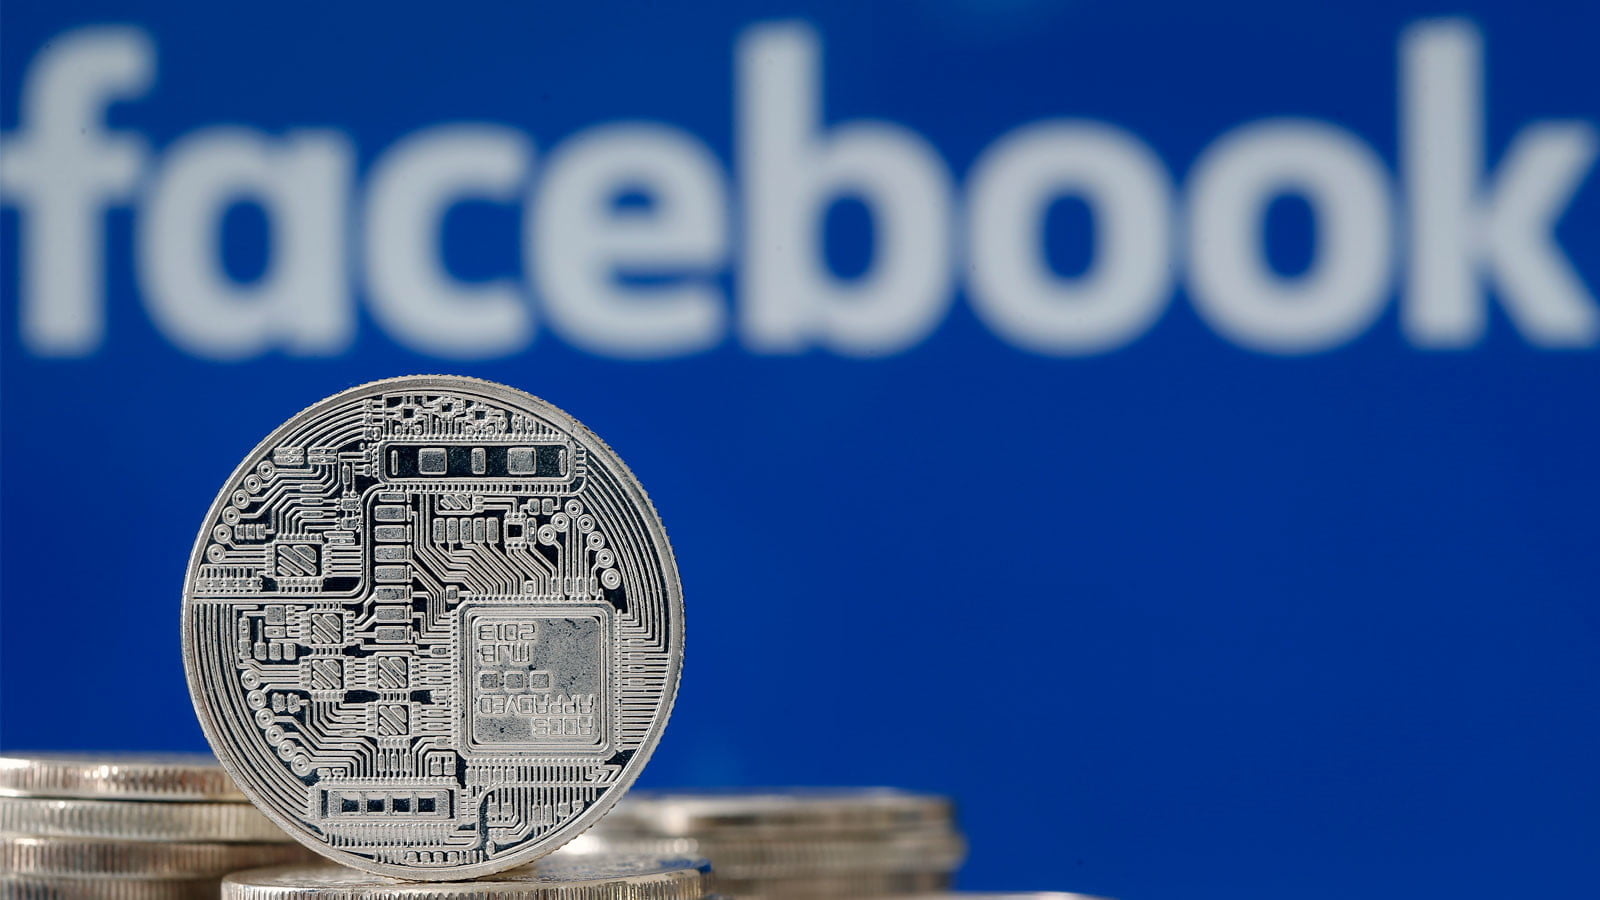 Libra, la criptomoneda de Facebook, se lanzaría en enero